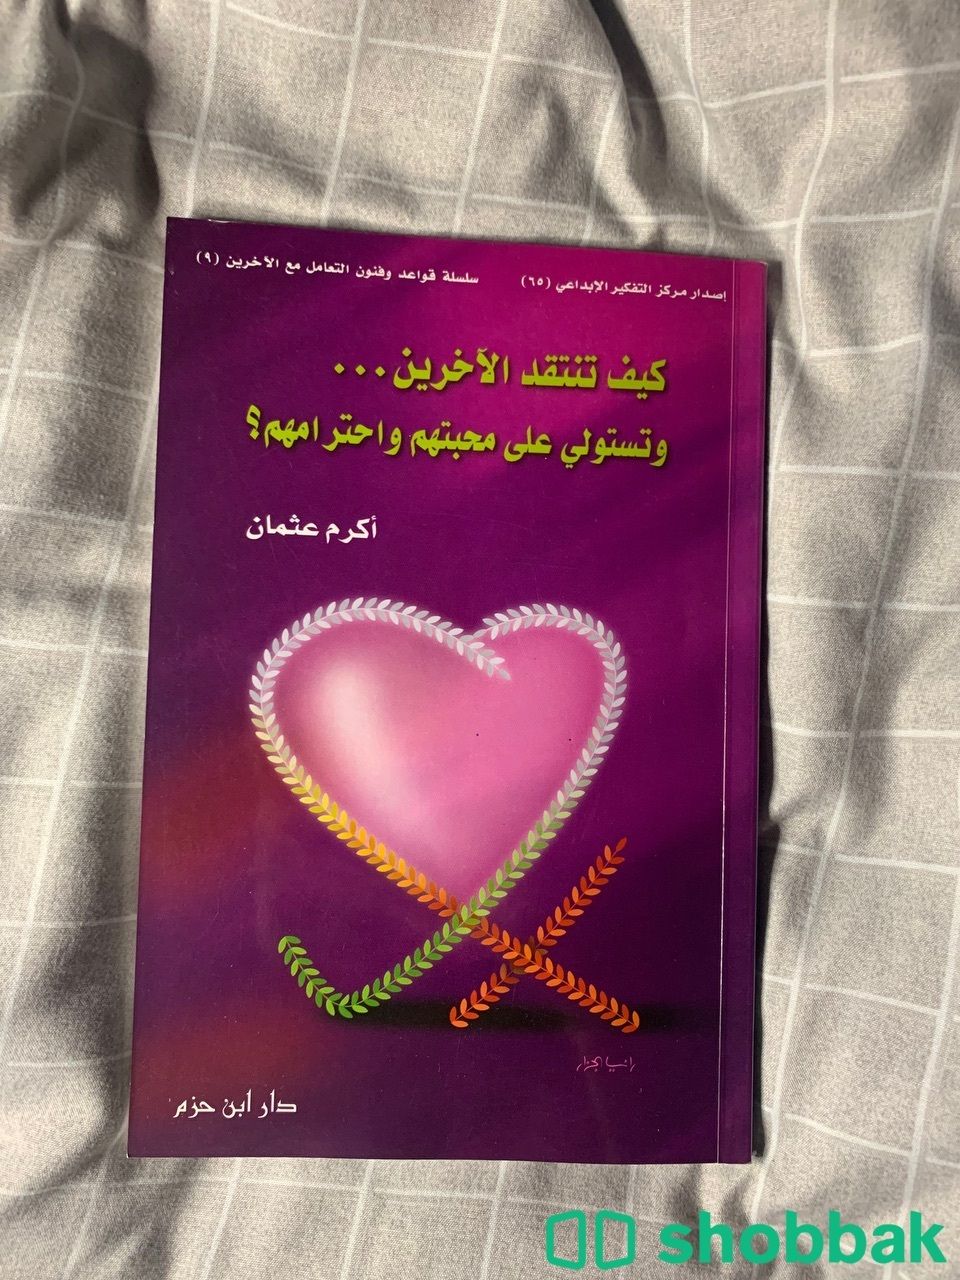 كتاب كيف تنتقد الاخرين وتستولي على محبتهم واحترامهم Shobbak Saudi Arabia